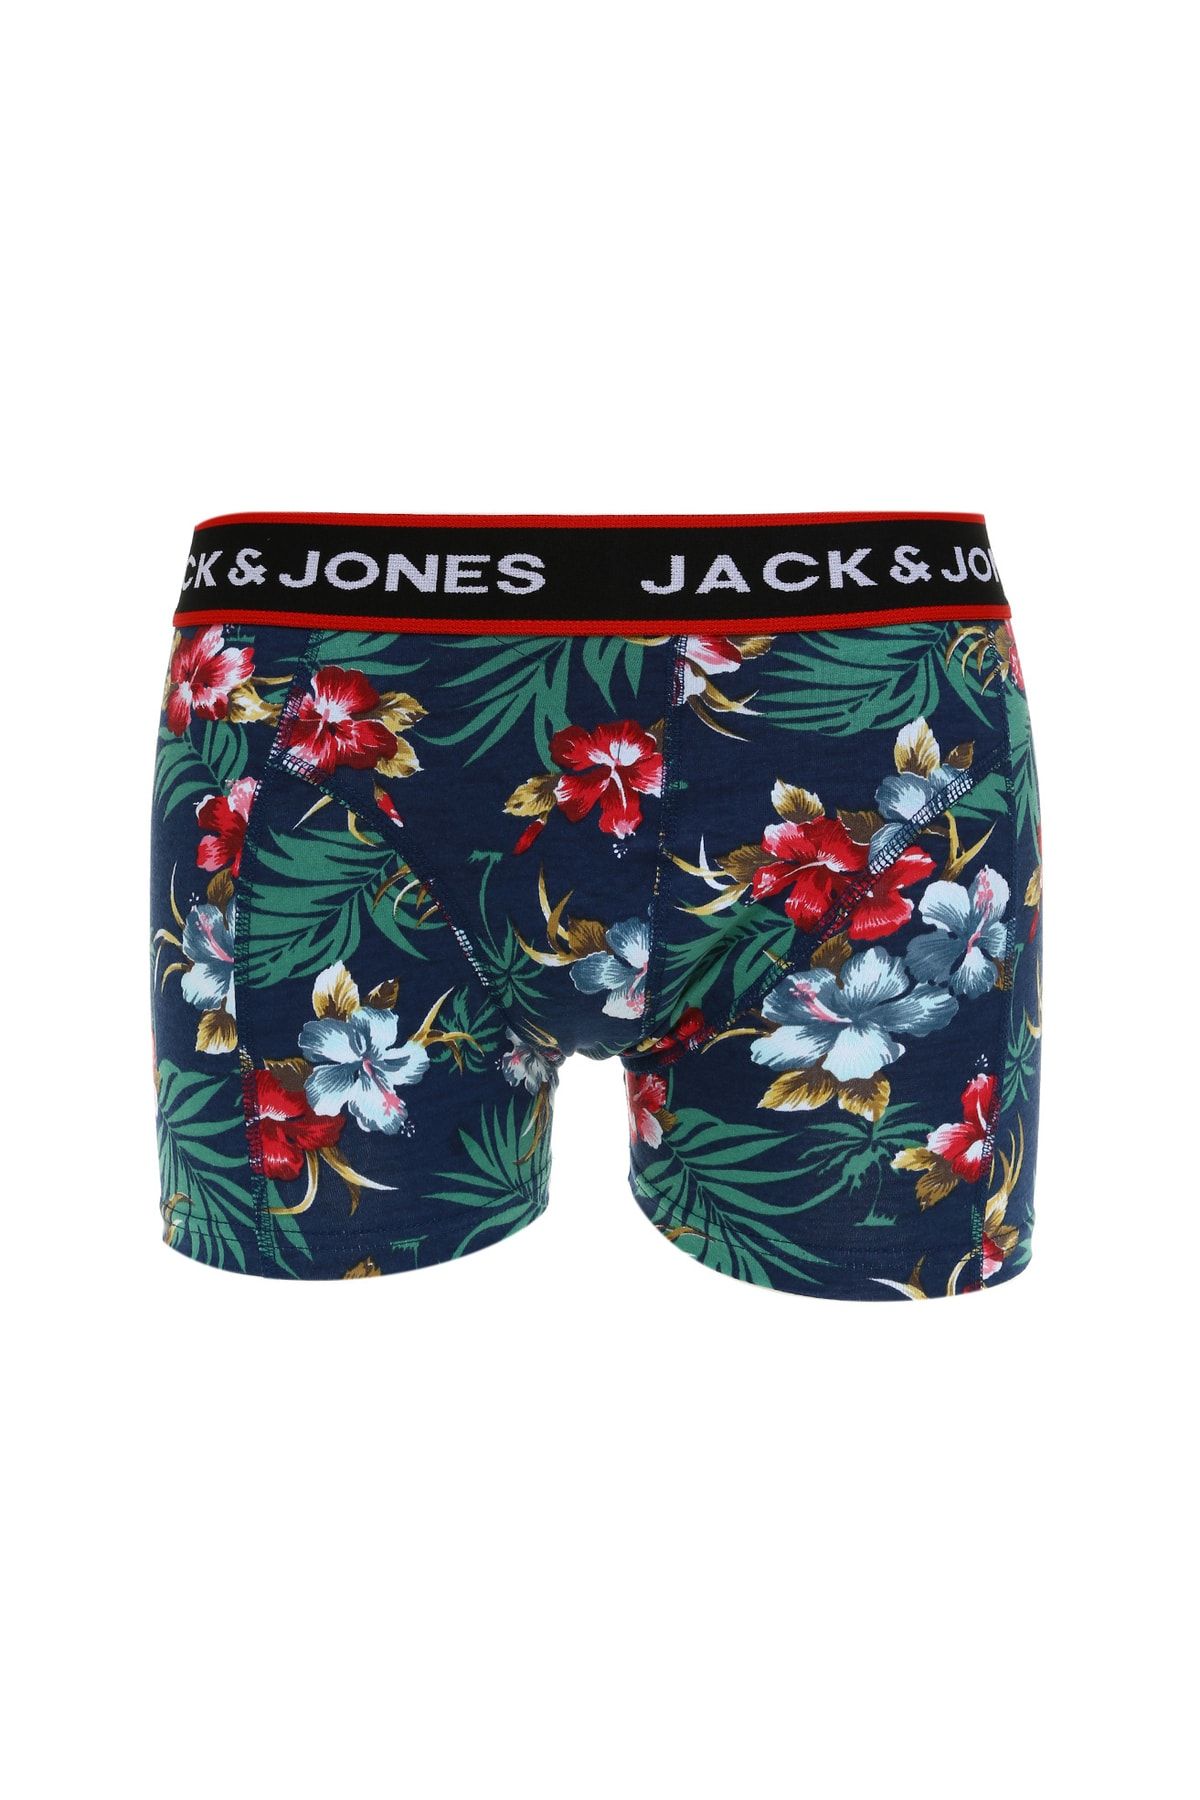 Jack & Jones 12225697_jaclittle Trunks Try Normal Bel Desenli Koyu Yeşil Erkek Boxer